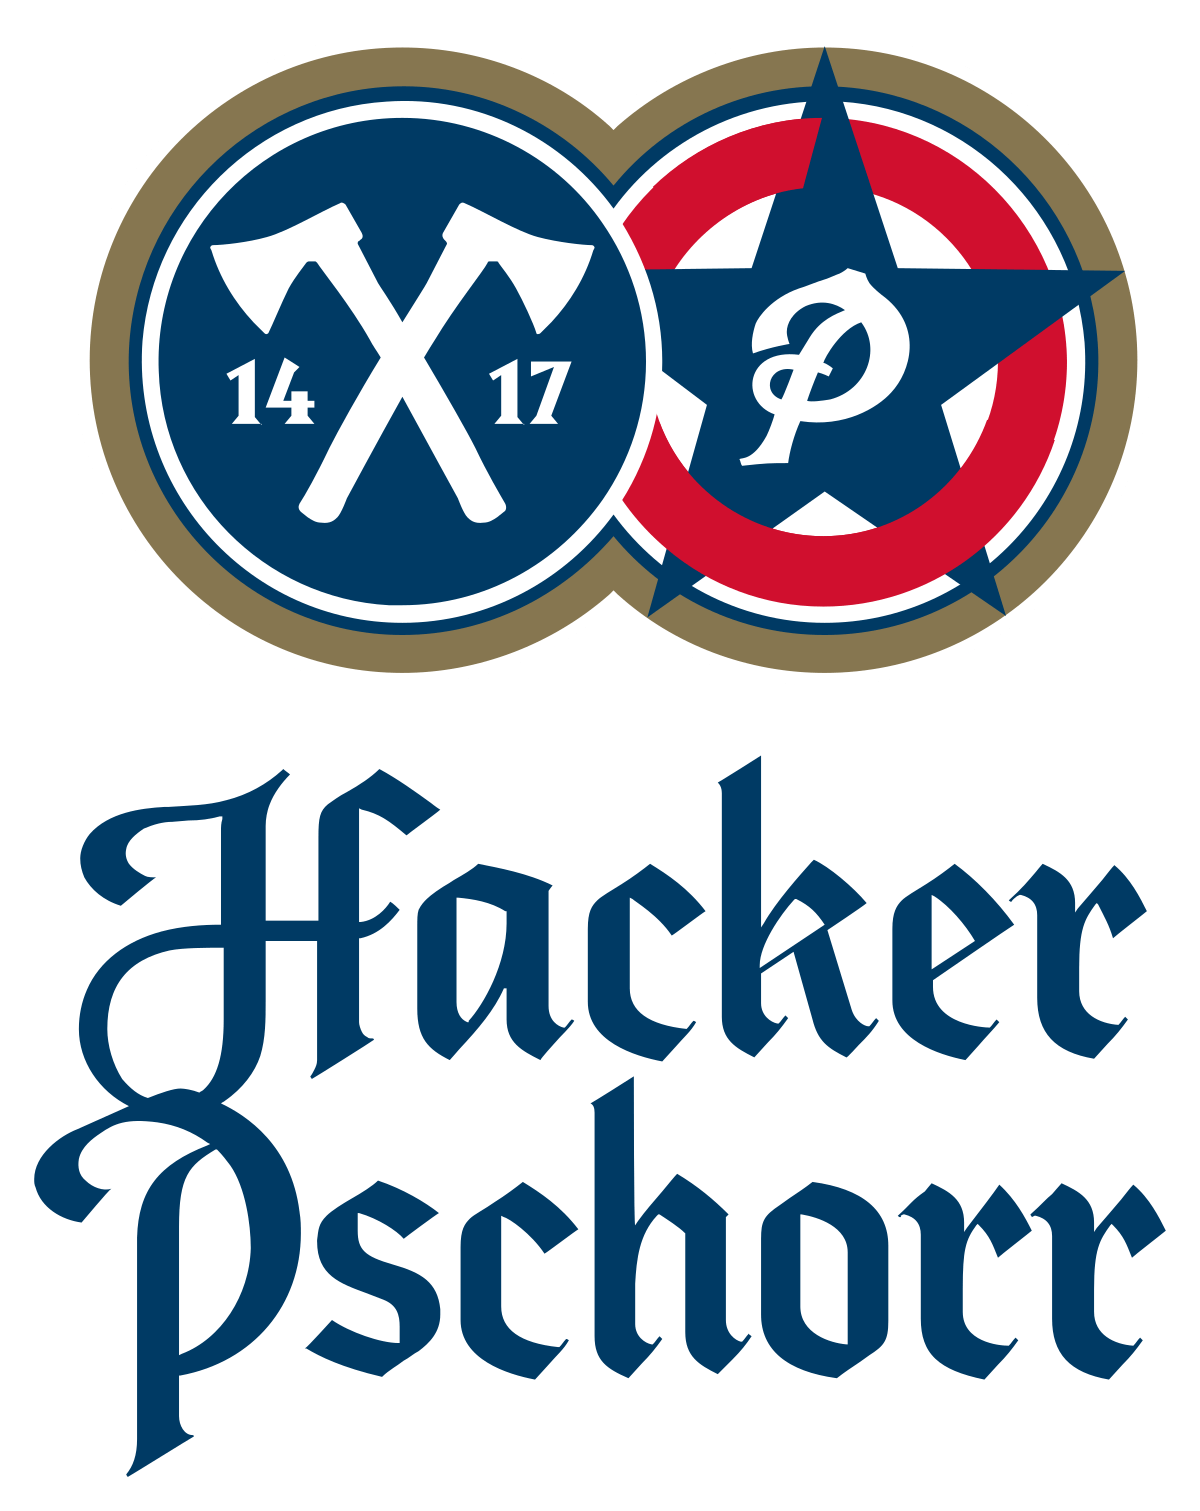 Hacker-Pschorr Logo - Hacker-Pschorr – Wikipedia